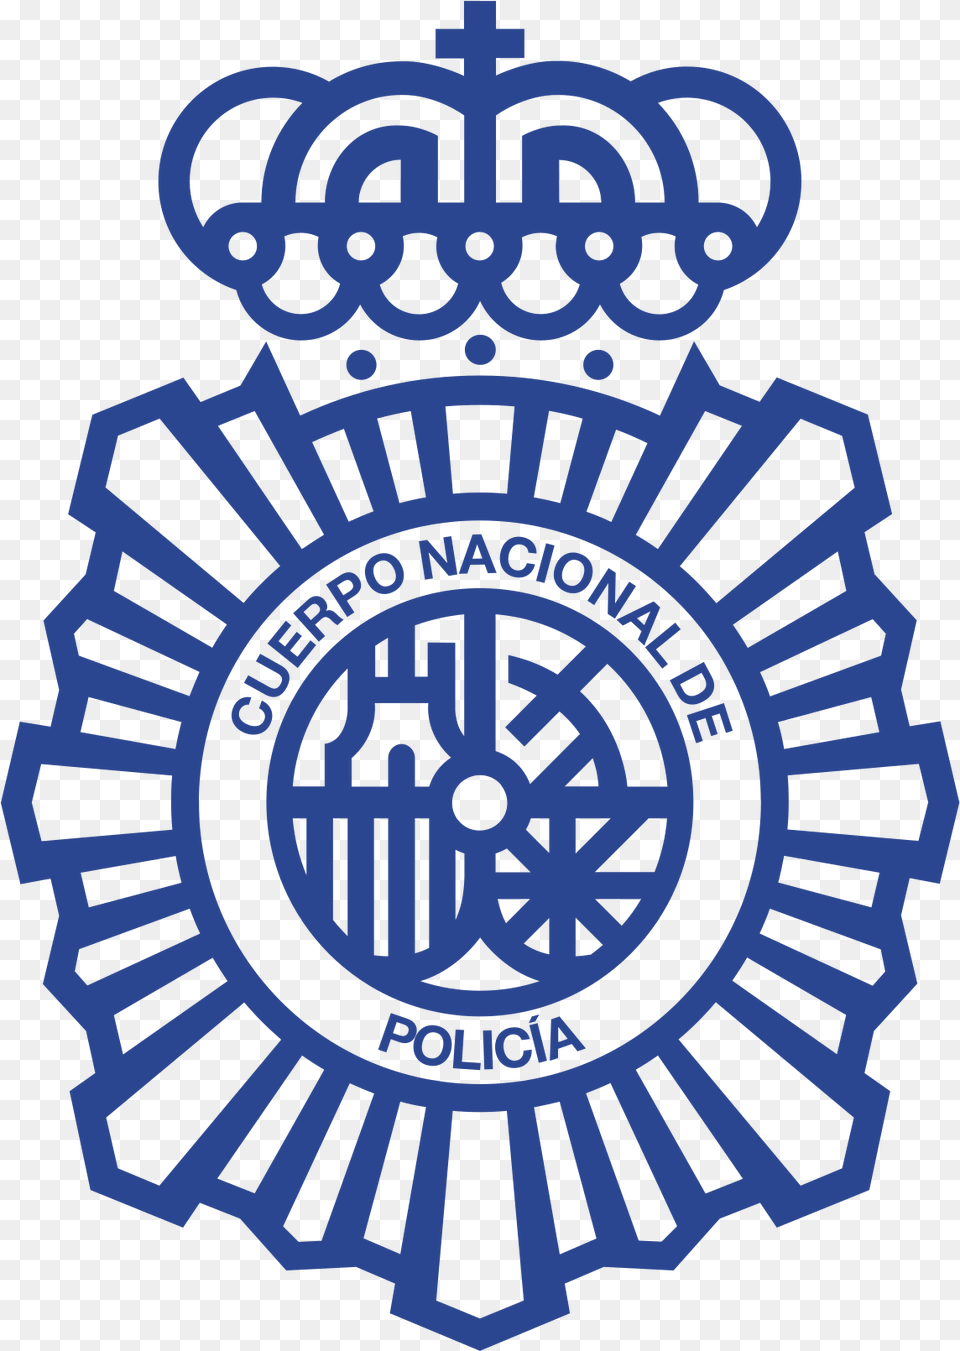 Spain National Police Corps, Badge, Logo, Symbol, Emblem Free Transparent Png